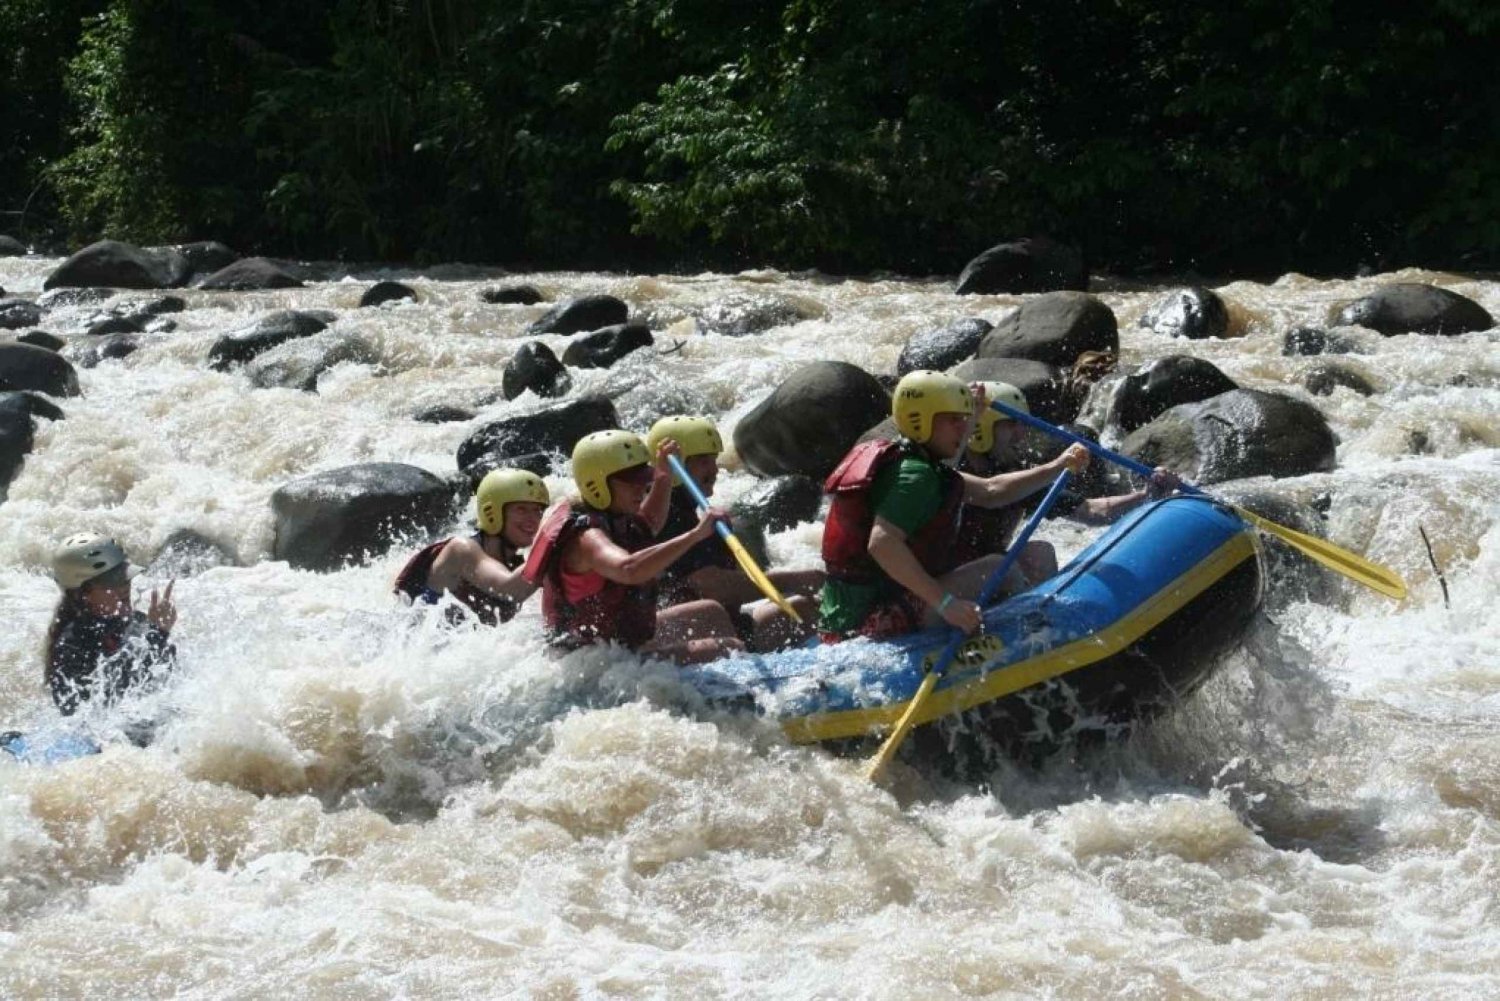 La Fortuna - Journée complète de rafting sur la rivière Sarapiquí (classe IV)